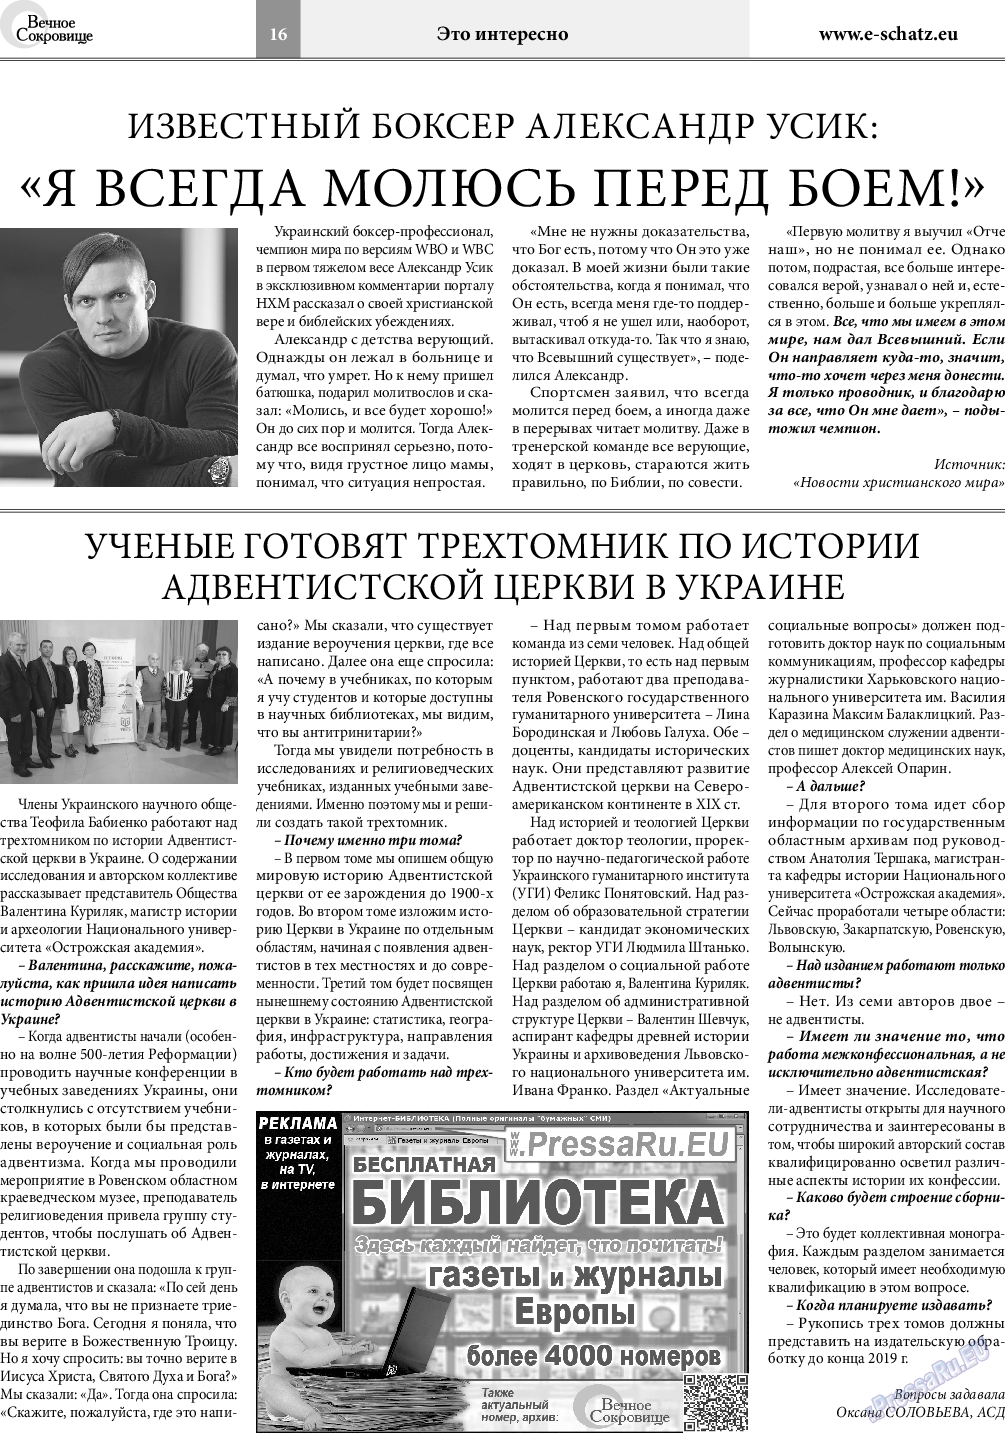 Вечное сокровище, газета. 2018 №3 стр.16